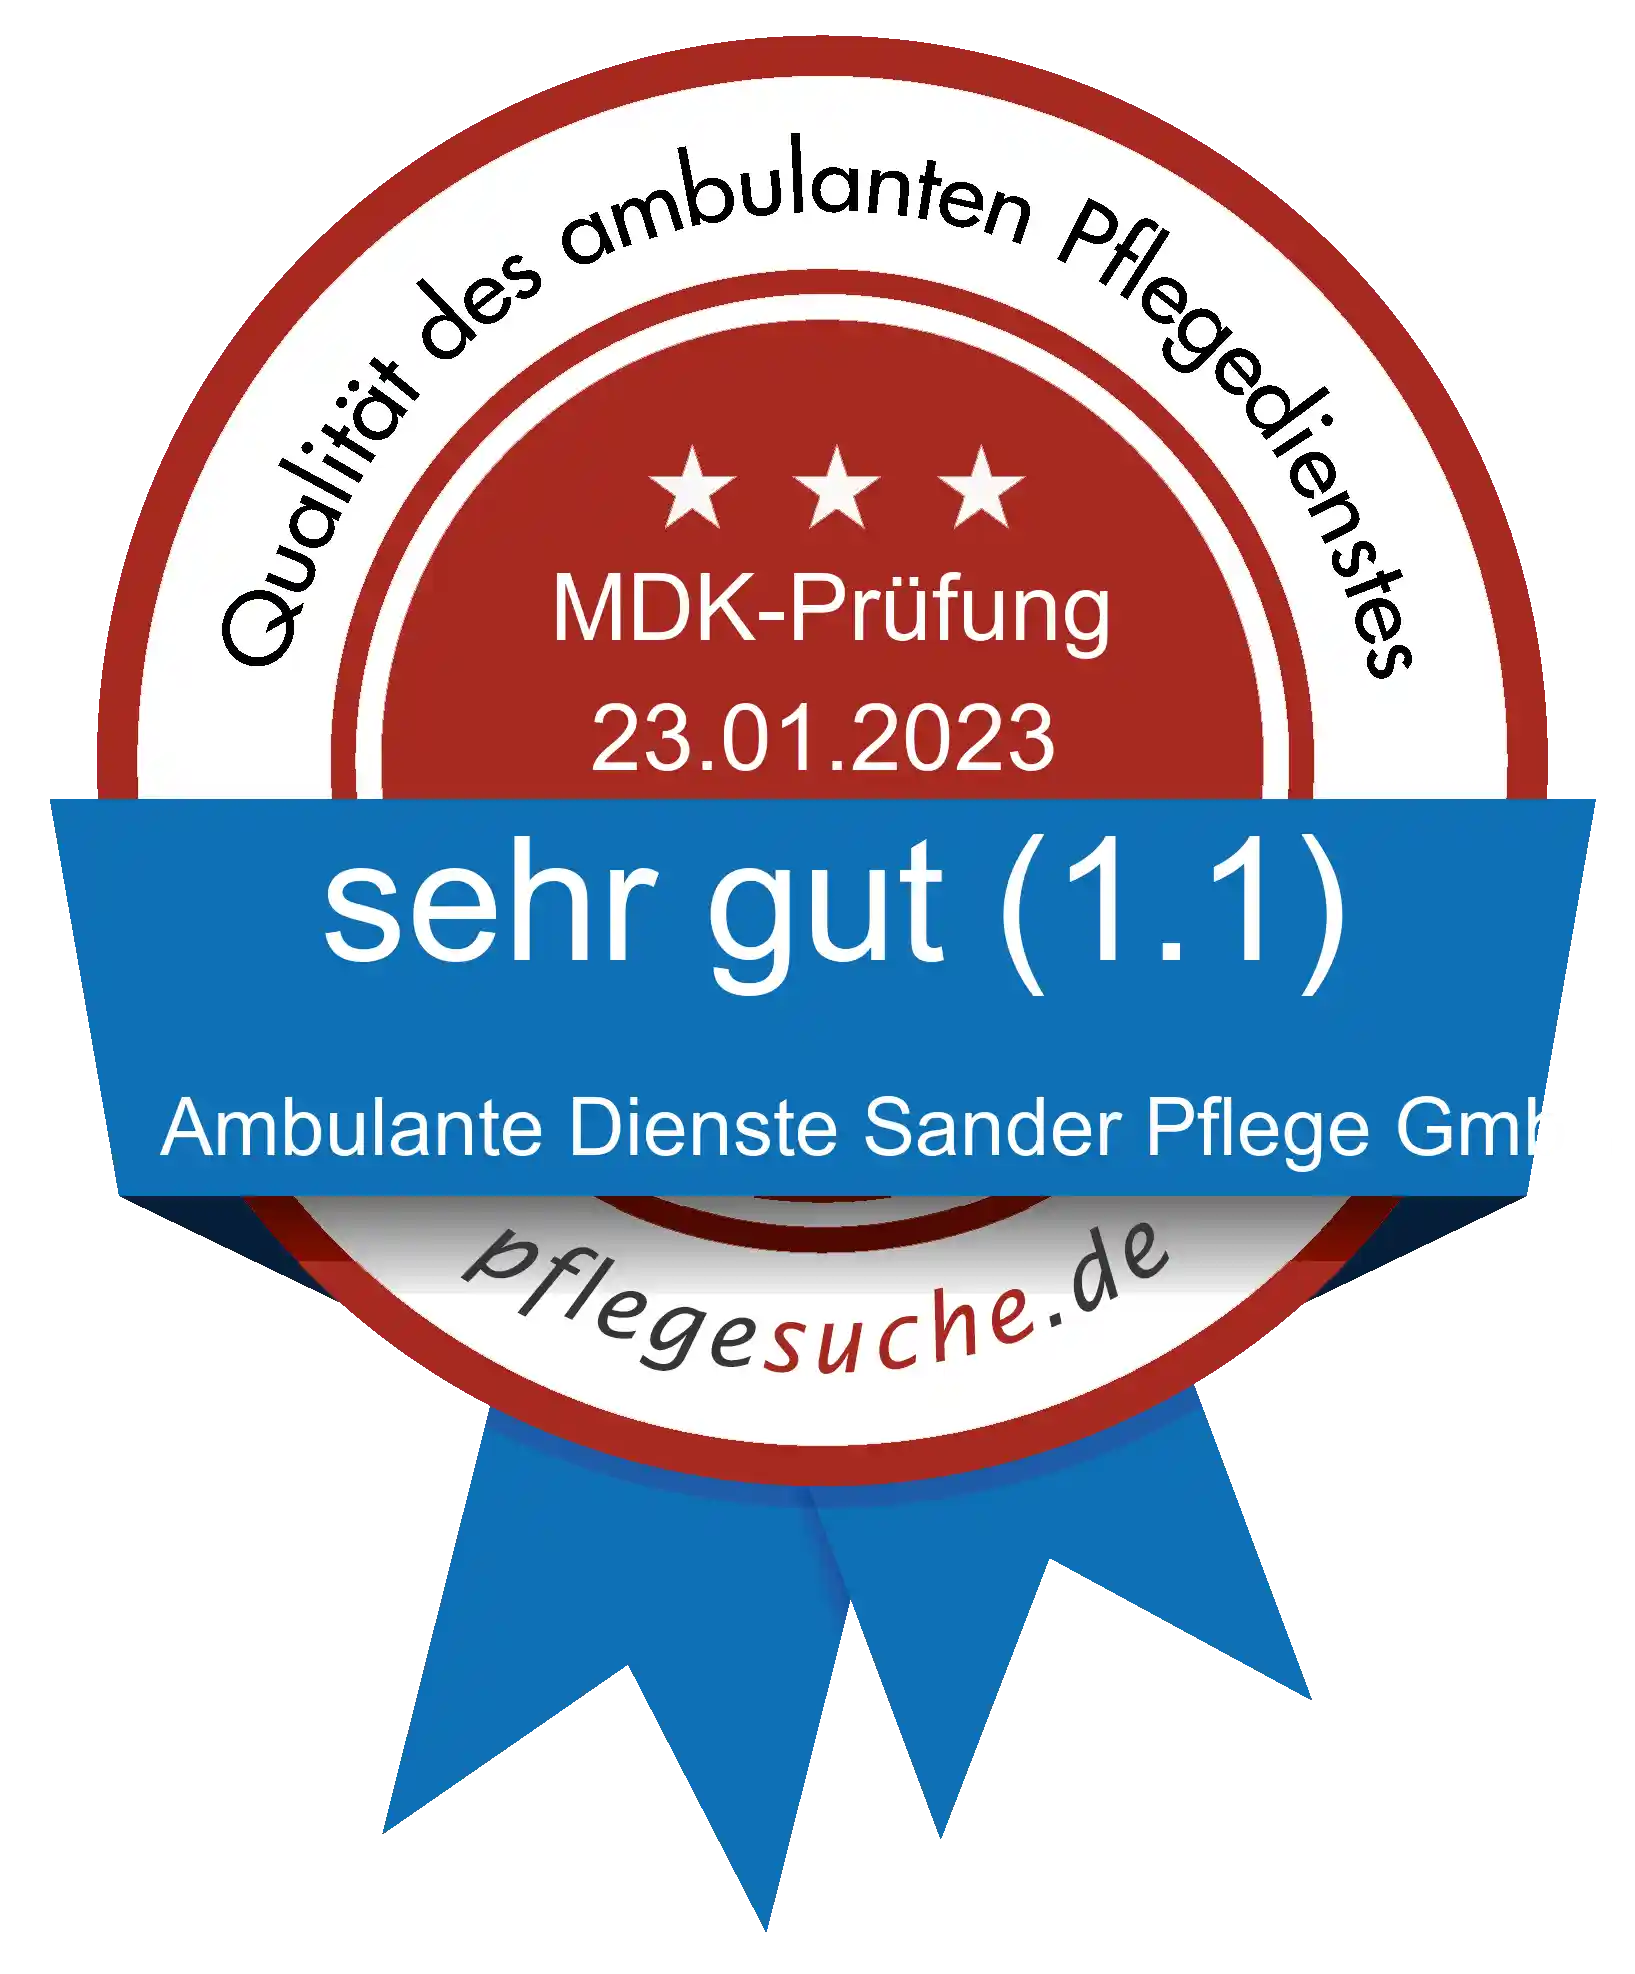 Siegel Benotung: Ambulante Dienste Sander Pflege GmbH